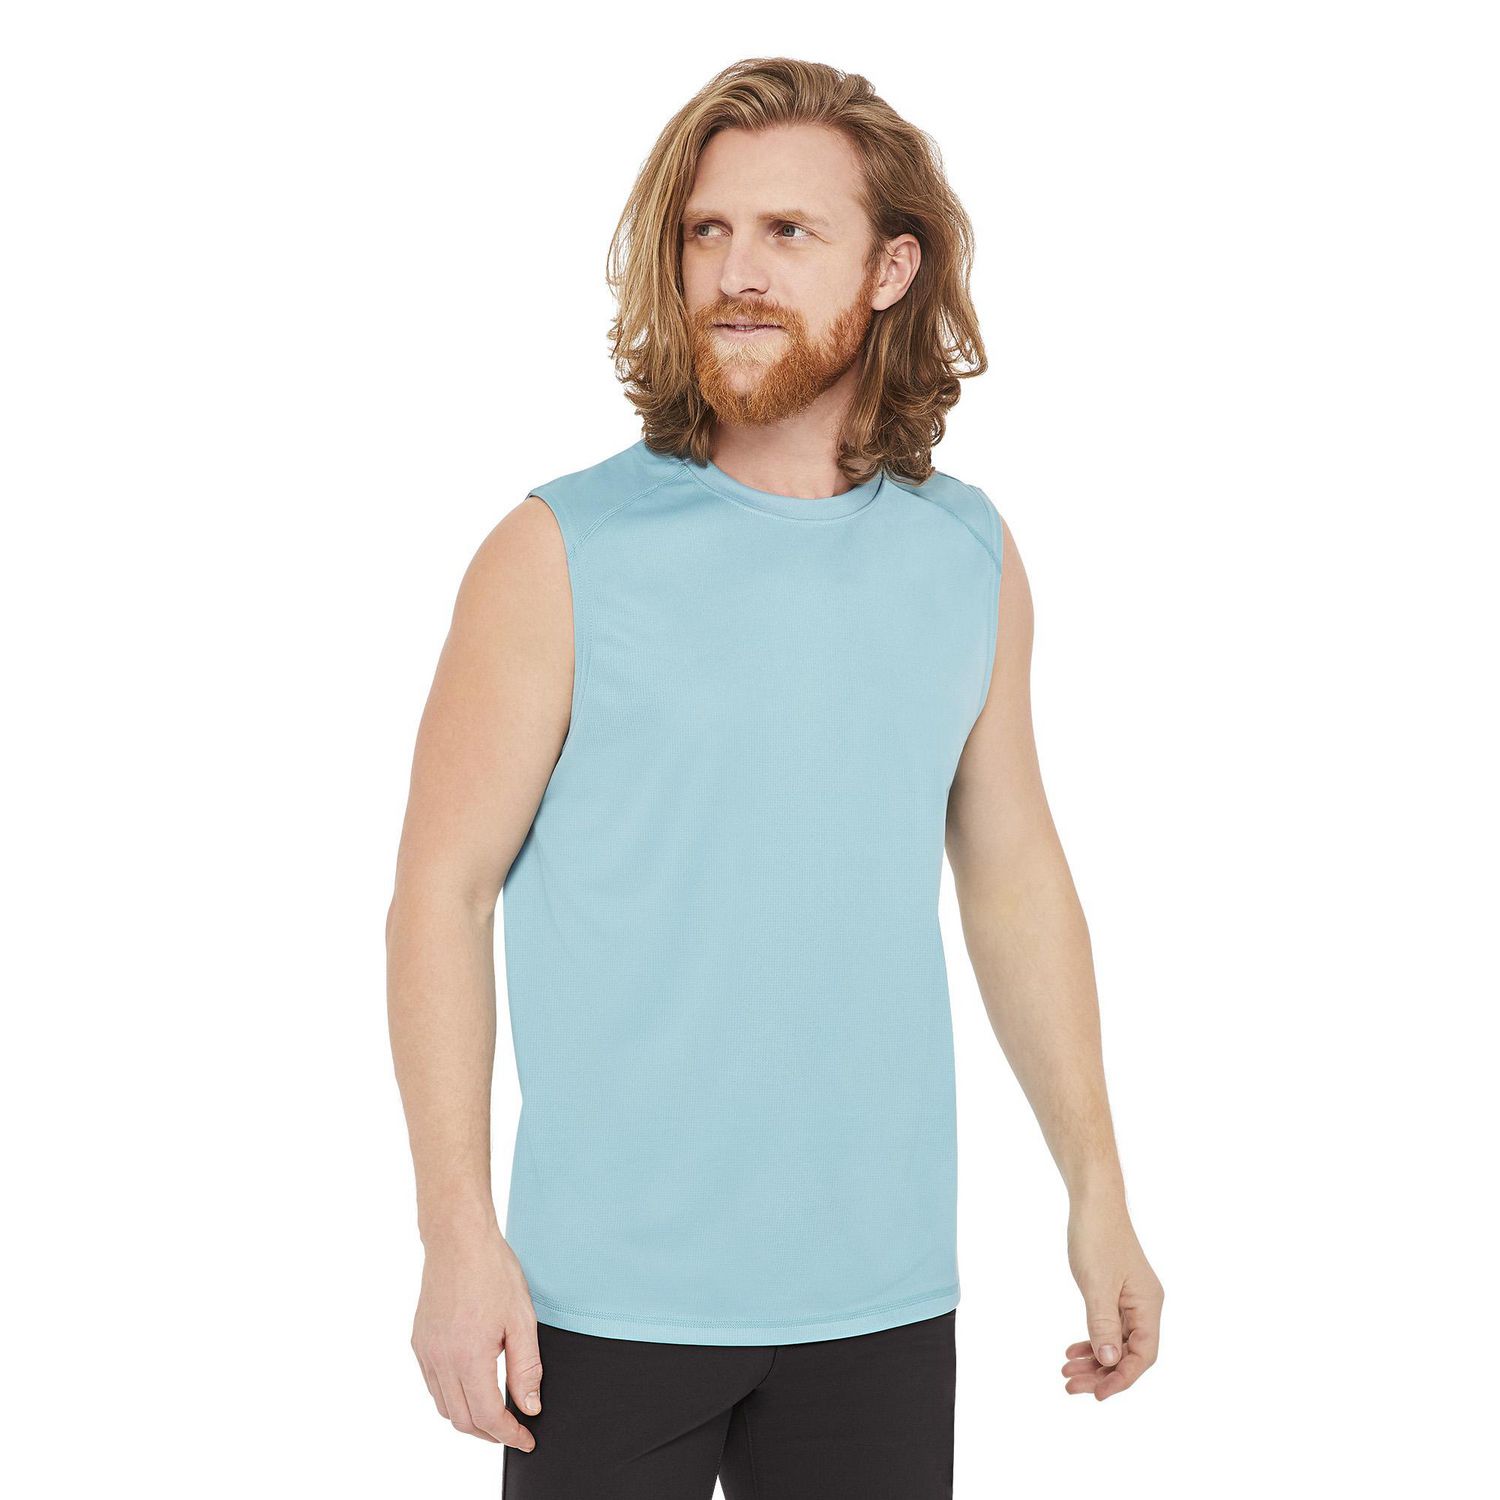 athletic works sleeveless shirts